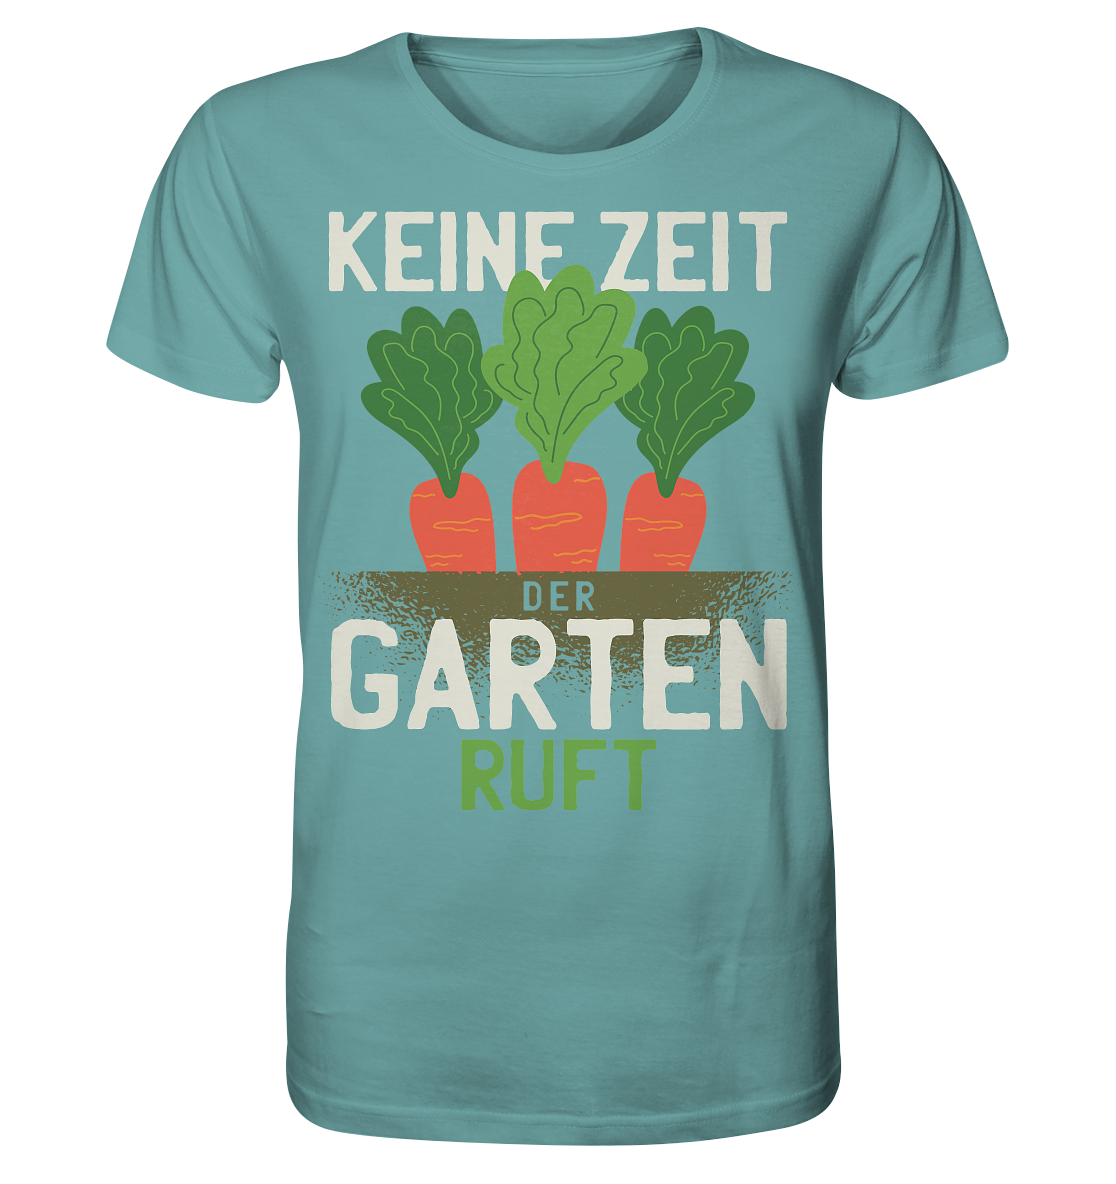 Keine Zeit der Garten ruft - Organic Shirt - Online Kaufhaus München